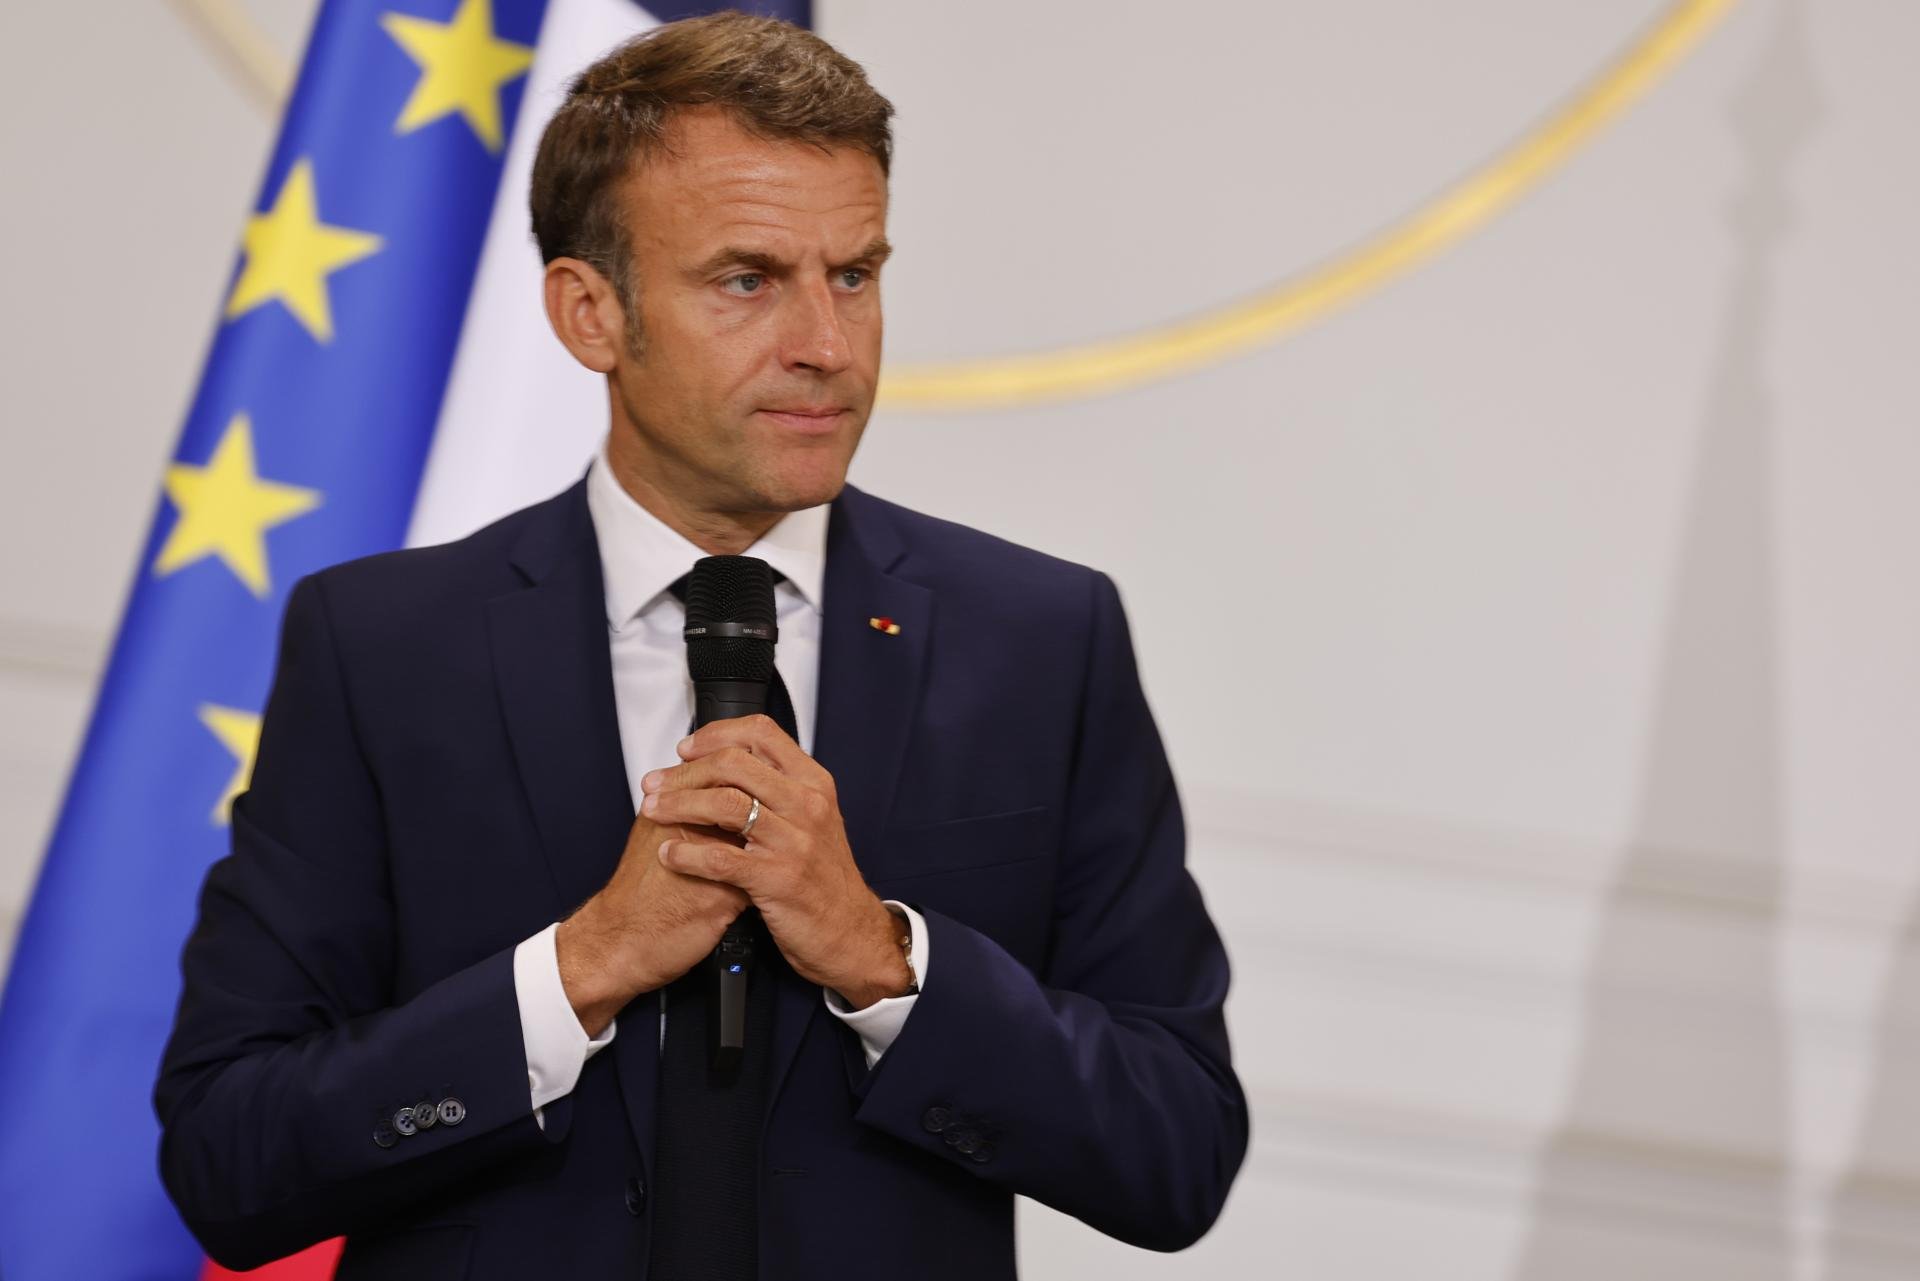 Emmanuel Macron impulsa una "llei d'emergència" per reconstruir França després dels aldarulls